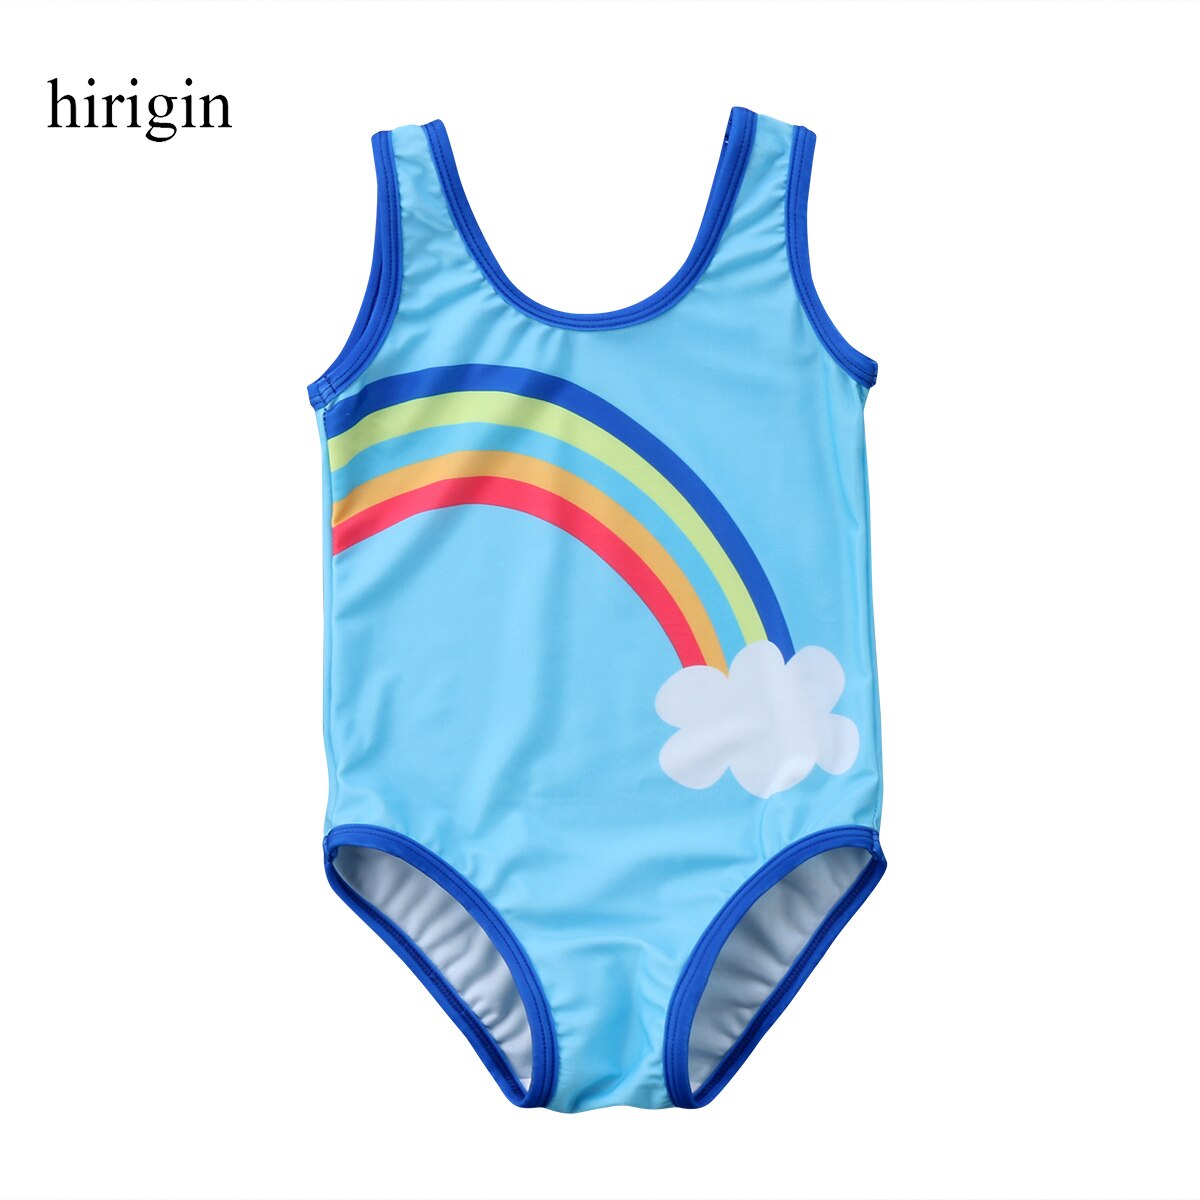 Blå himmel regnbue baby pige badetøj 1-6t alder baby ét stykke badedragt børn pige bikini monokini strand svømning badedragt: 4 to 5 år gammel